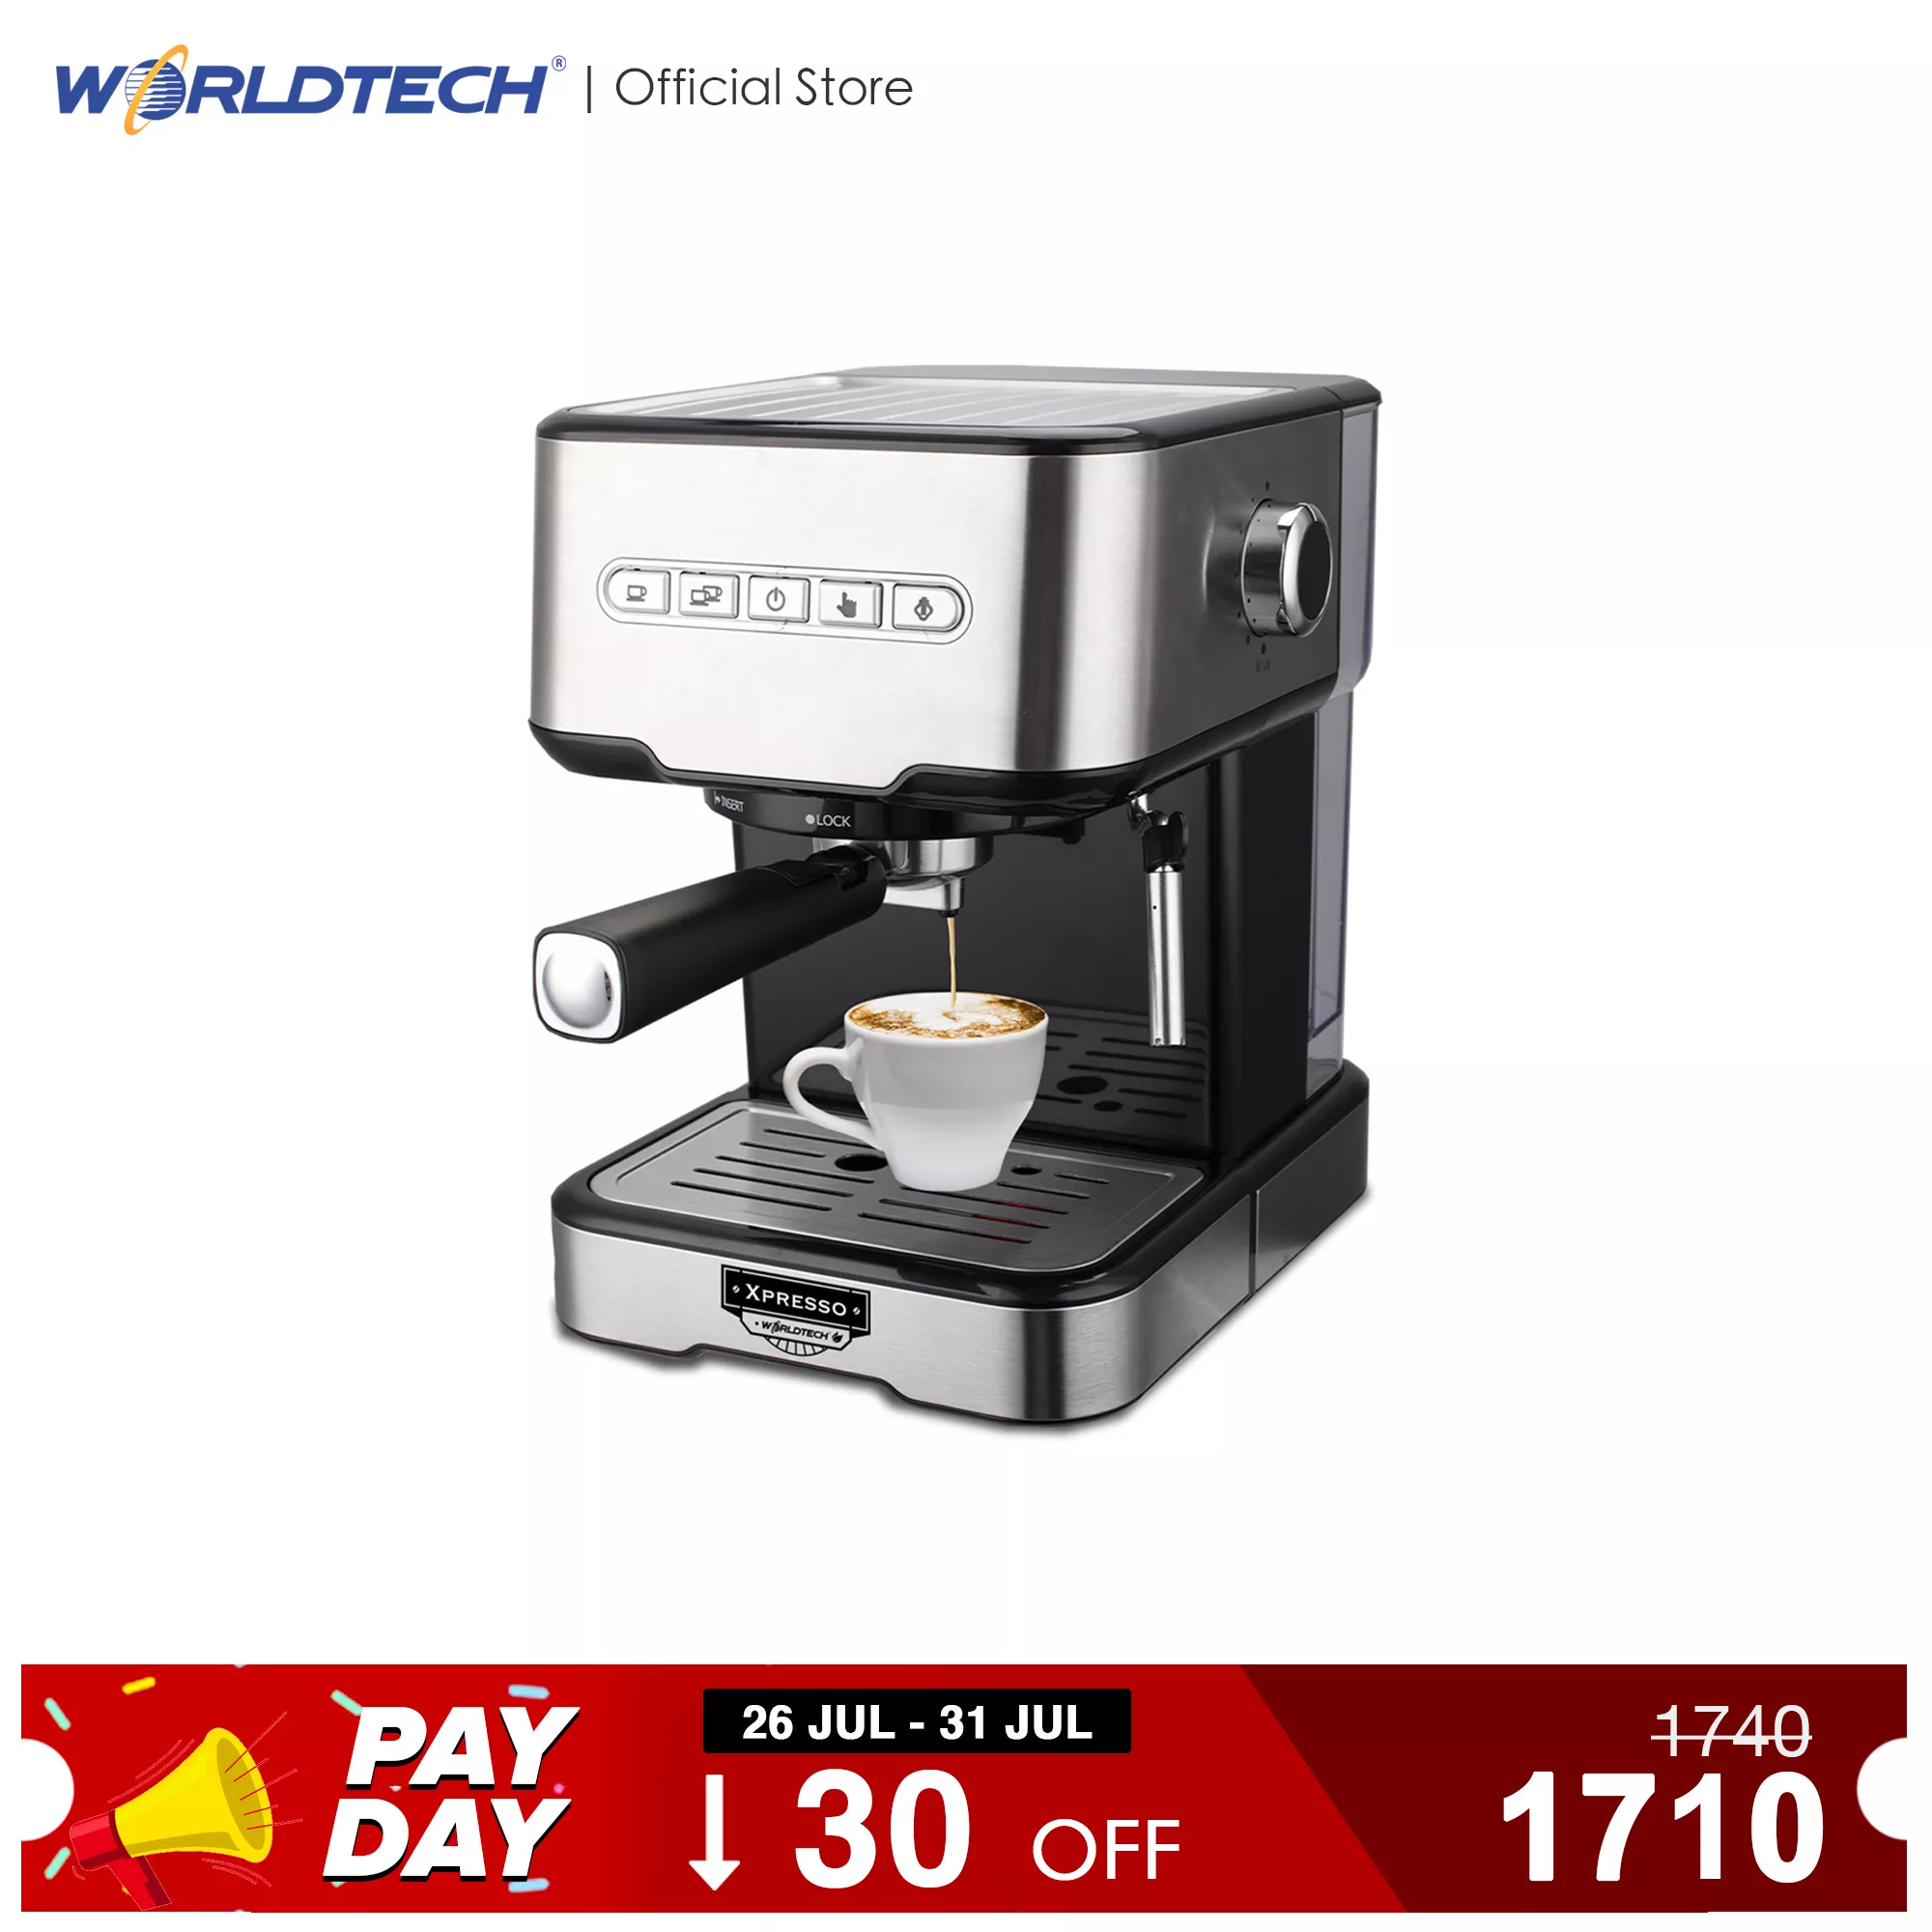 Worldtech เครื่องชงกาแฟเอสเปรสโซ่ รุ่น WT-CM403 เครื่องชงกาแฟ เครื่องทำกาแฟเอสเปรสโซ่ เครื่องชงกาแฟอัตโนมัติ Espresso Machine ปรับความเข้มข้นของกาแฟได้ สกัดด้วยแรงดันสูง 20 บาร์ + พร้อมชุดด้ามชงกาแฟ รับประกัน 1 ปี